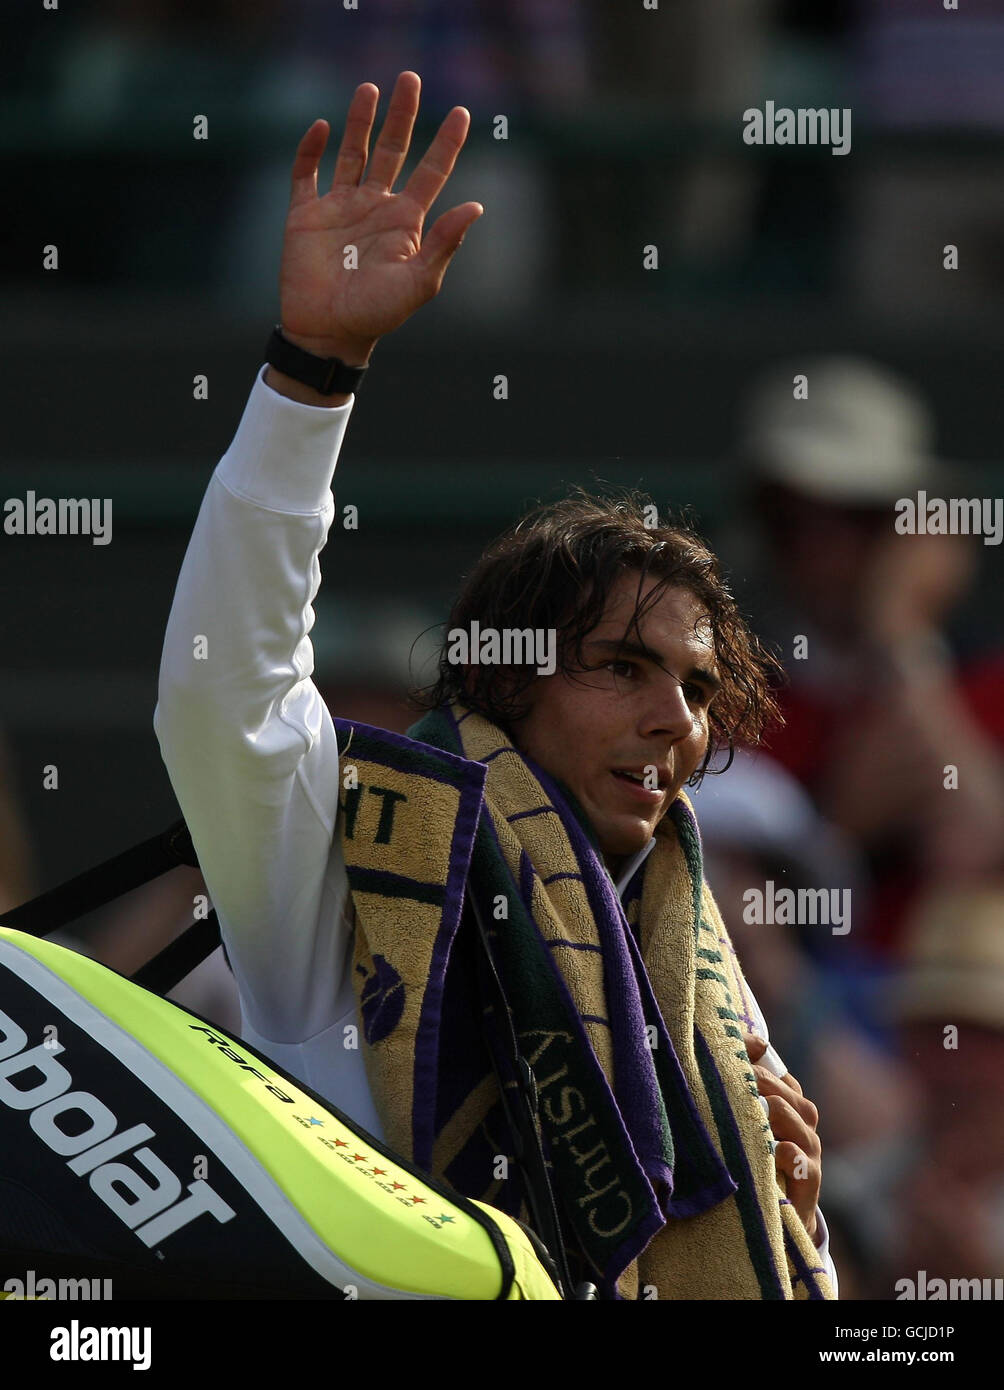 La spagnola Rafael Nadal celebra la vittoria sul Robin Soderling svedese durante il 9° giorno dei Campionati Wimbledon 2010 all'All England Lawn Tennis Club di Wimbledon. Foto Stock